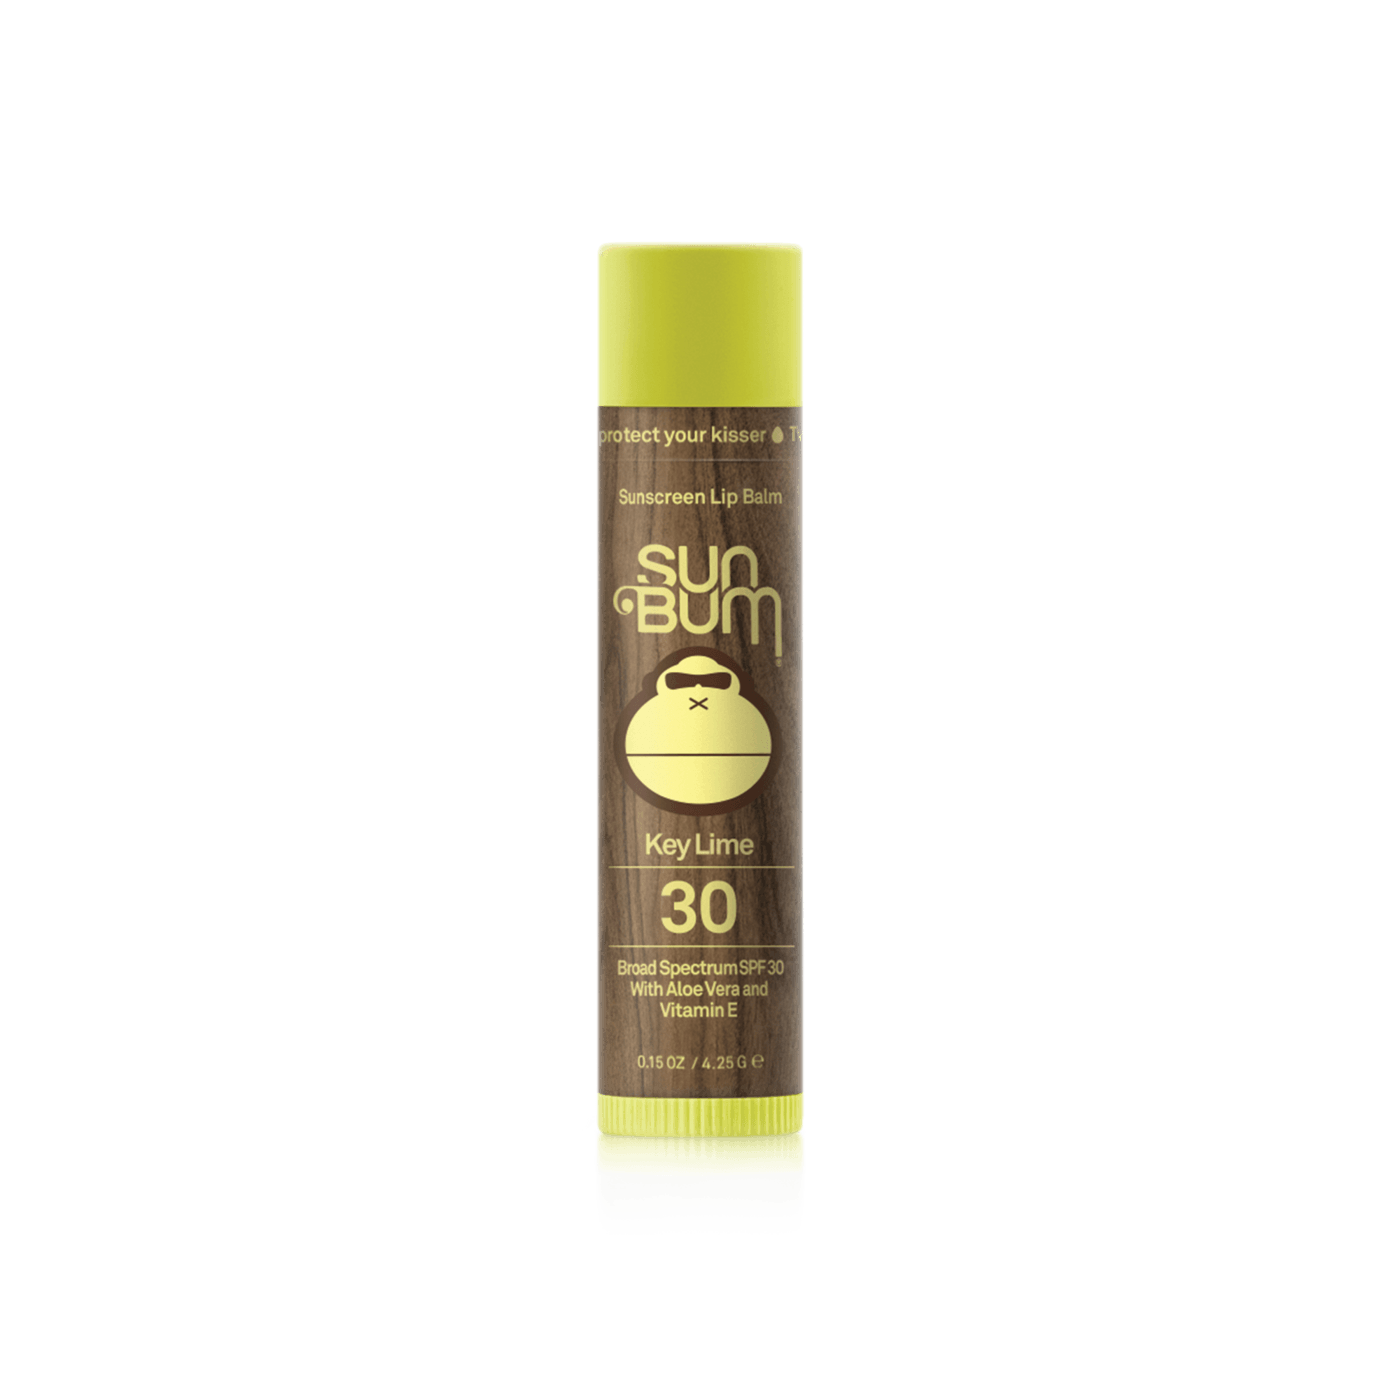 SUN BUM Original SPF 30 Sunscreen Lip Balm Key Lime ACCESSORIES - Sunscreen Sun Bum 